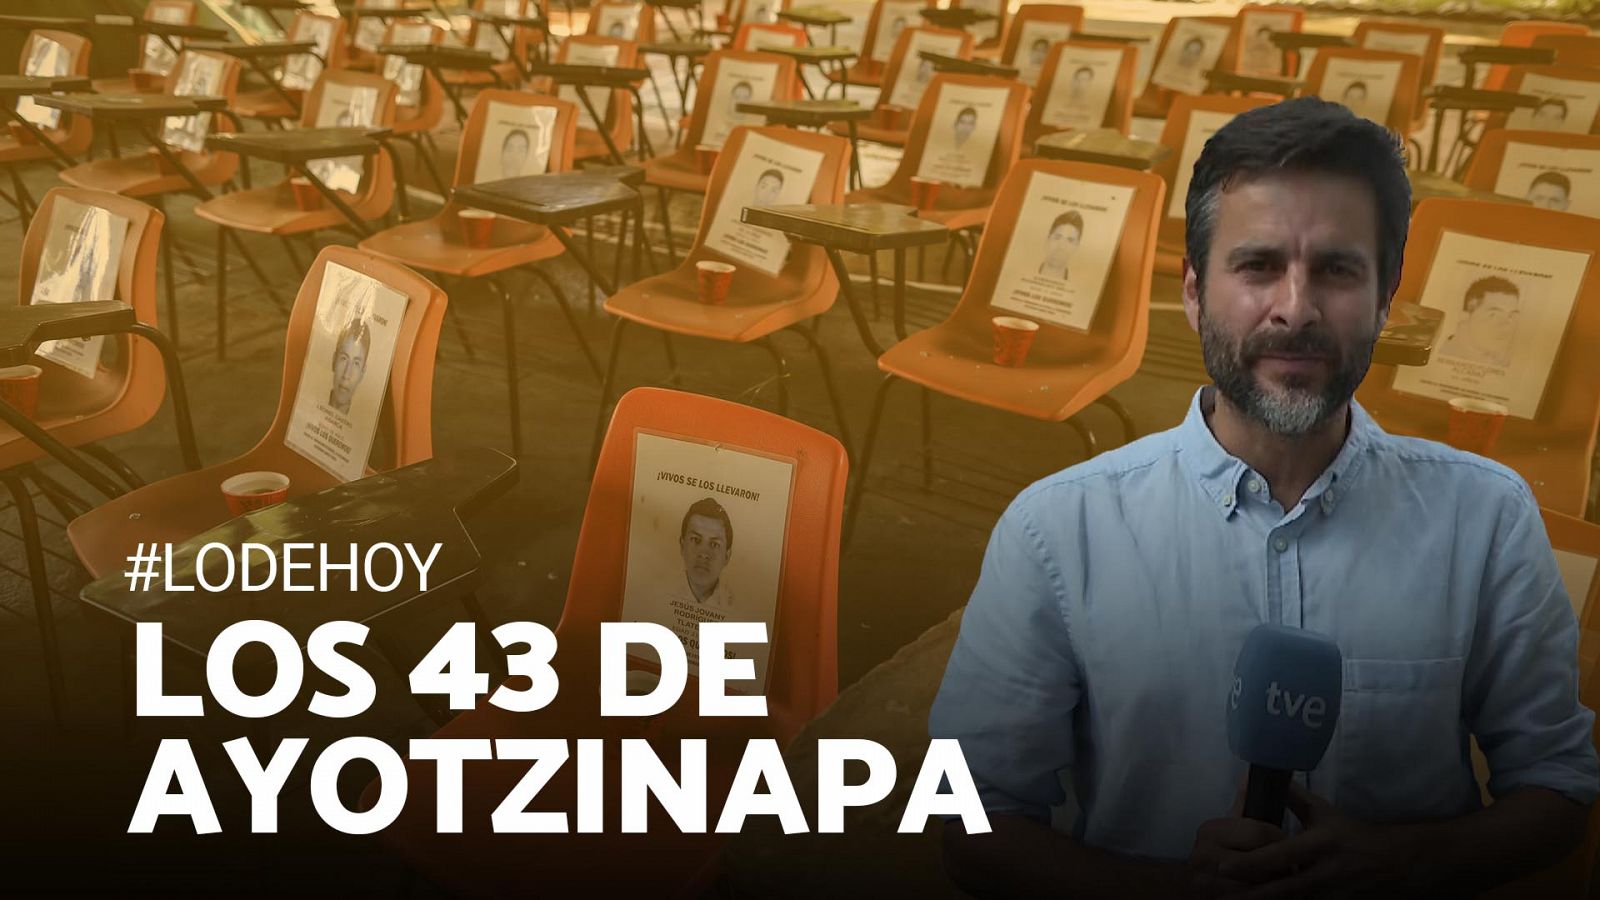 El caso Ayotzinapa, ocho años después: ¿qué se sabe de los 43 estudiantes desaparecidos?